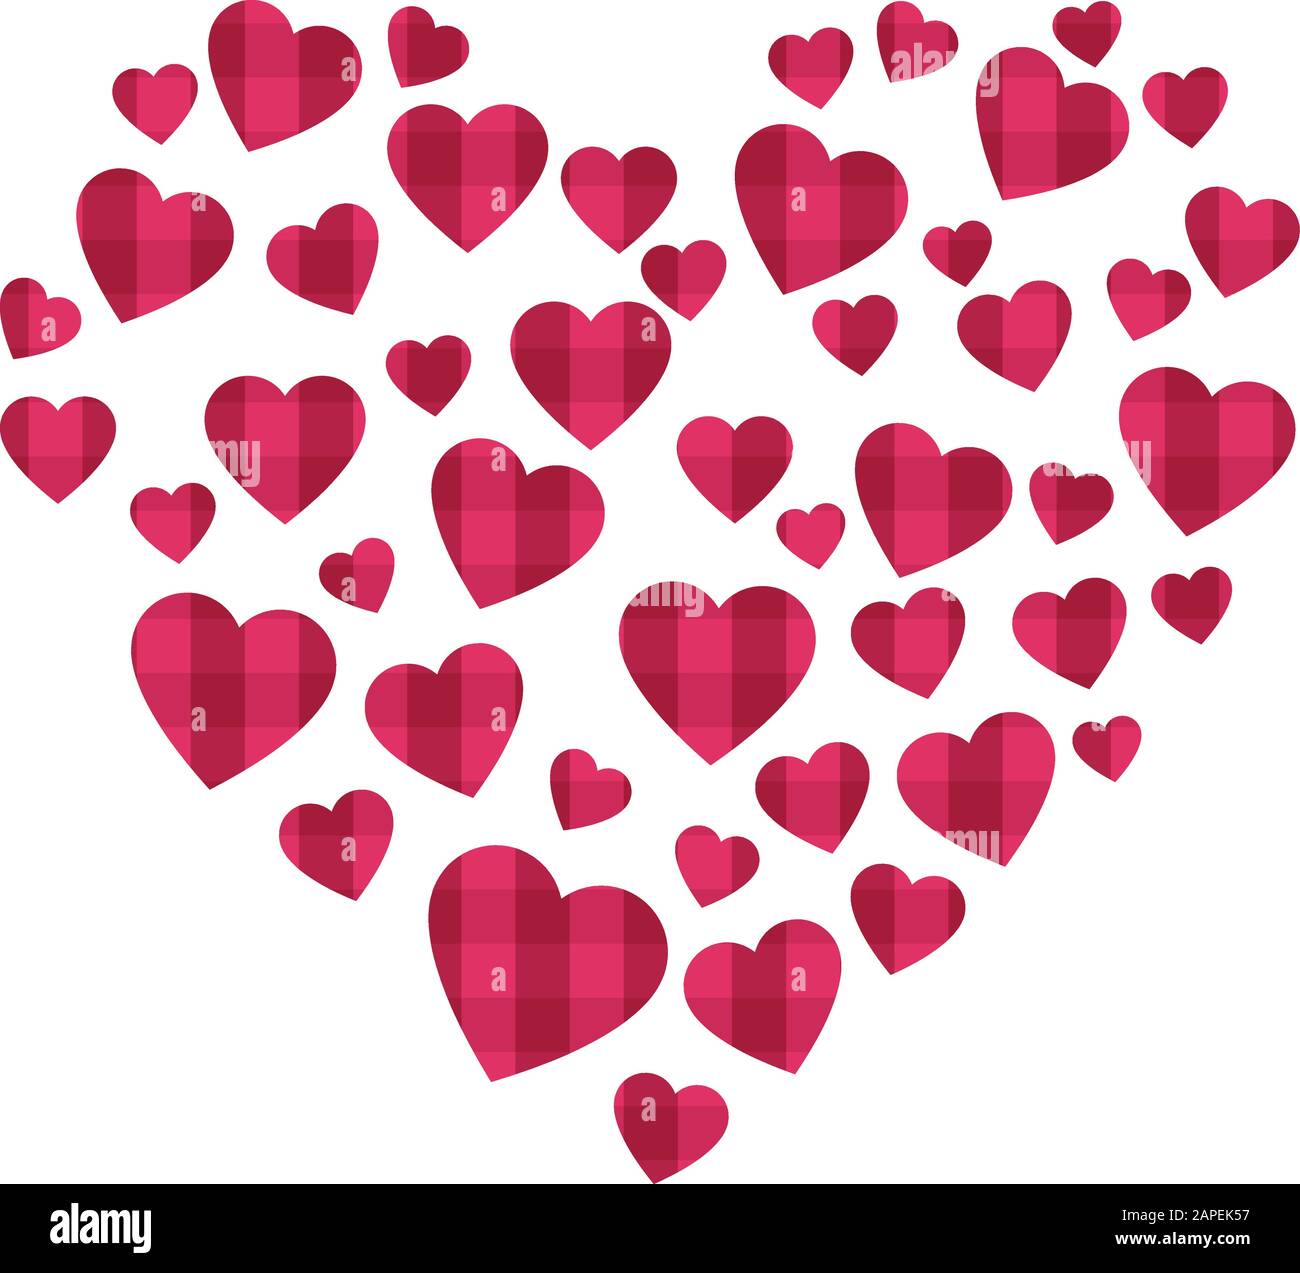 Un montón de corazones pequeños con textura, formando una forma de corazón grande, detalle de san Valentín, diseño Ilustración del Vector